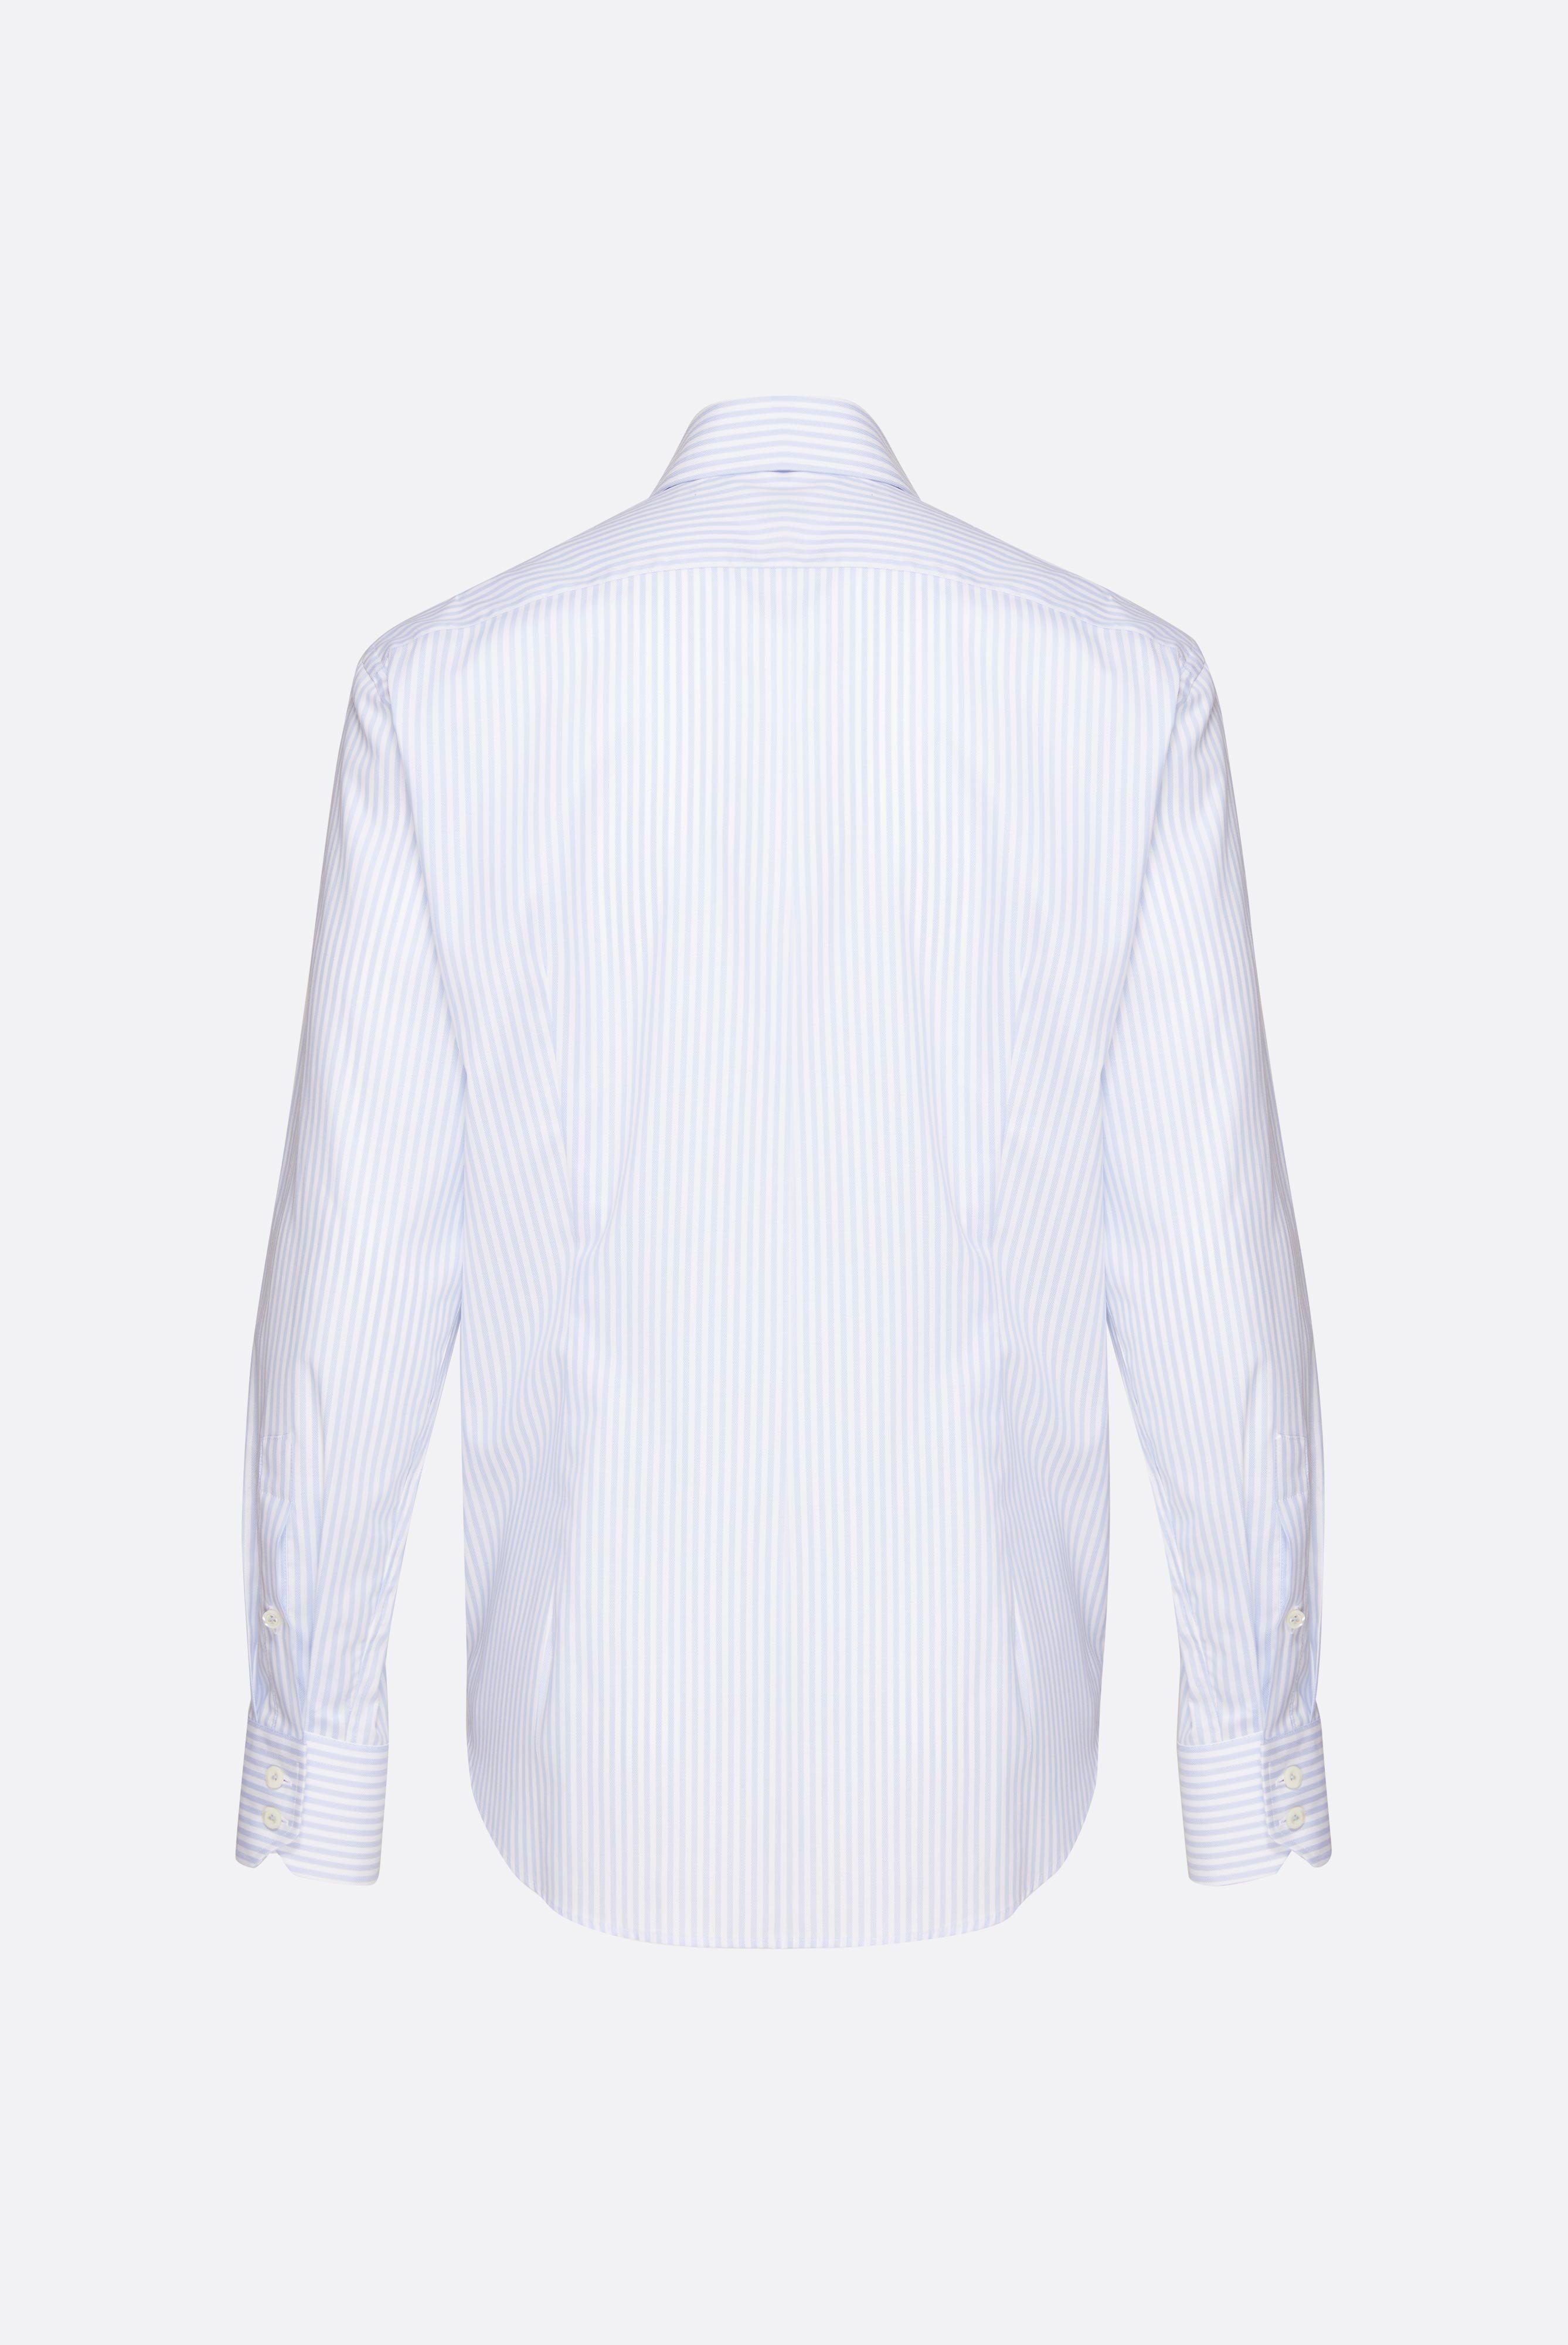 Bügelleichte Hemden+Bügelfreies Hemd mit Streifen Tailor Fit+20.2020.BQ.152101.007.41